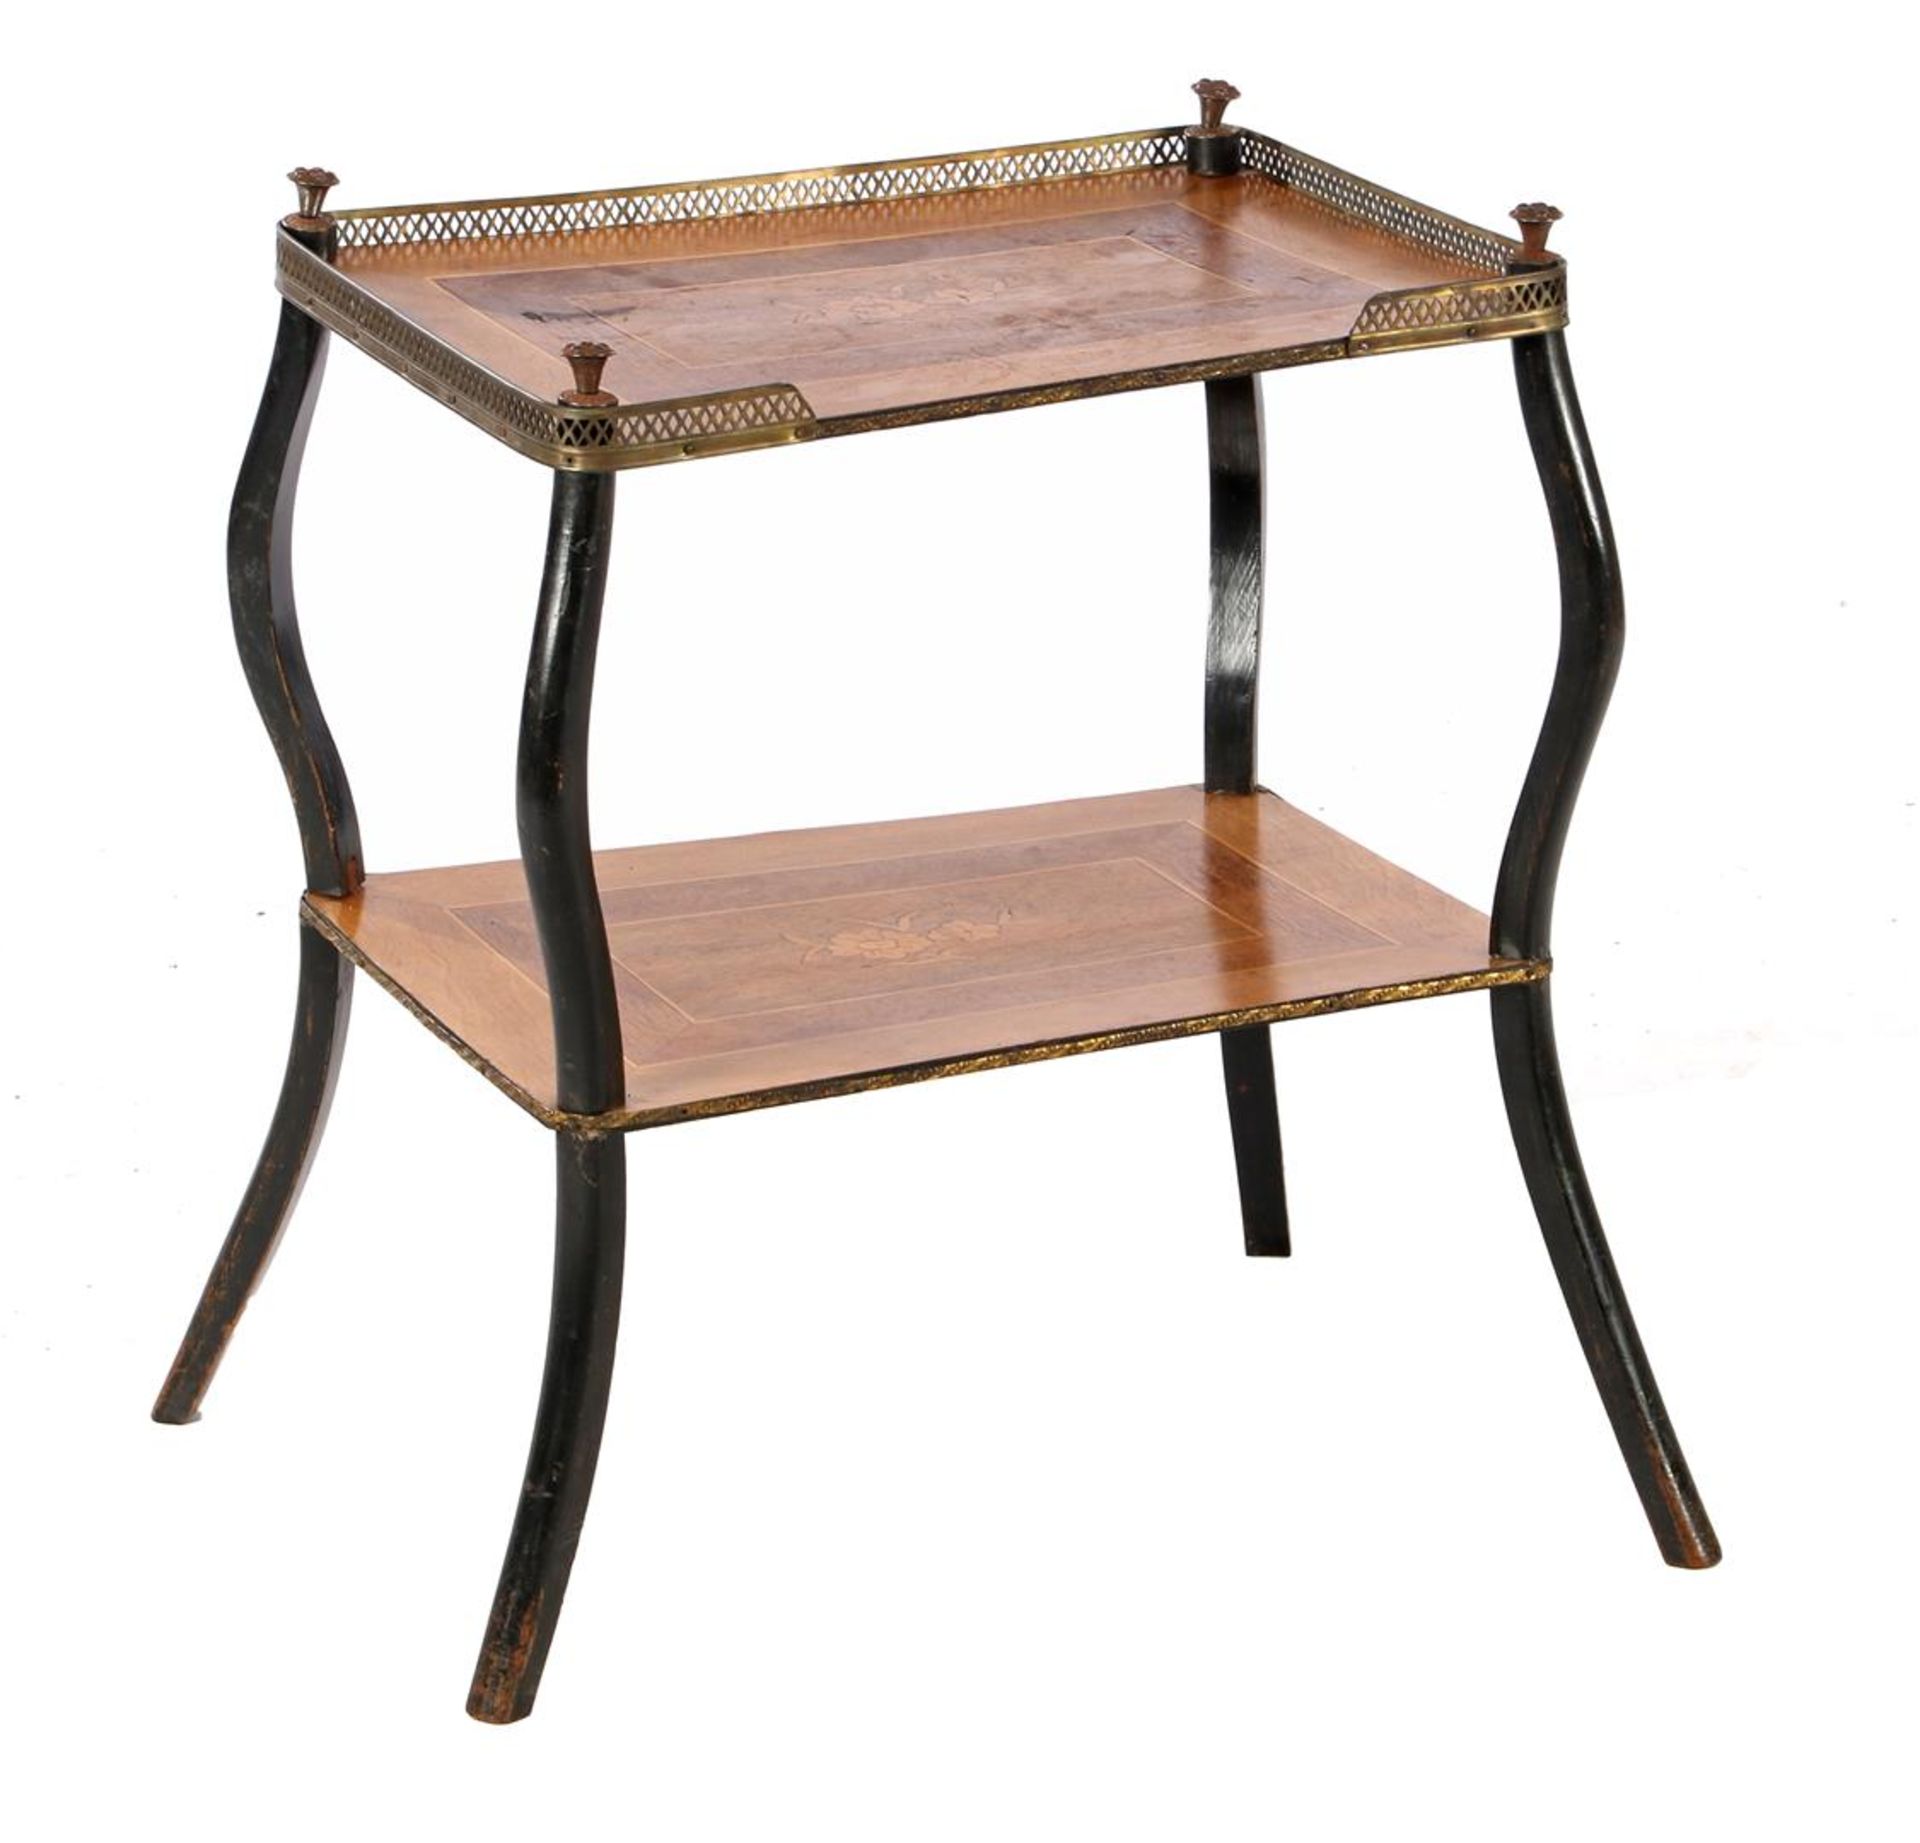 Shelf table made of veneer of various types of wood